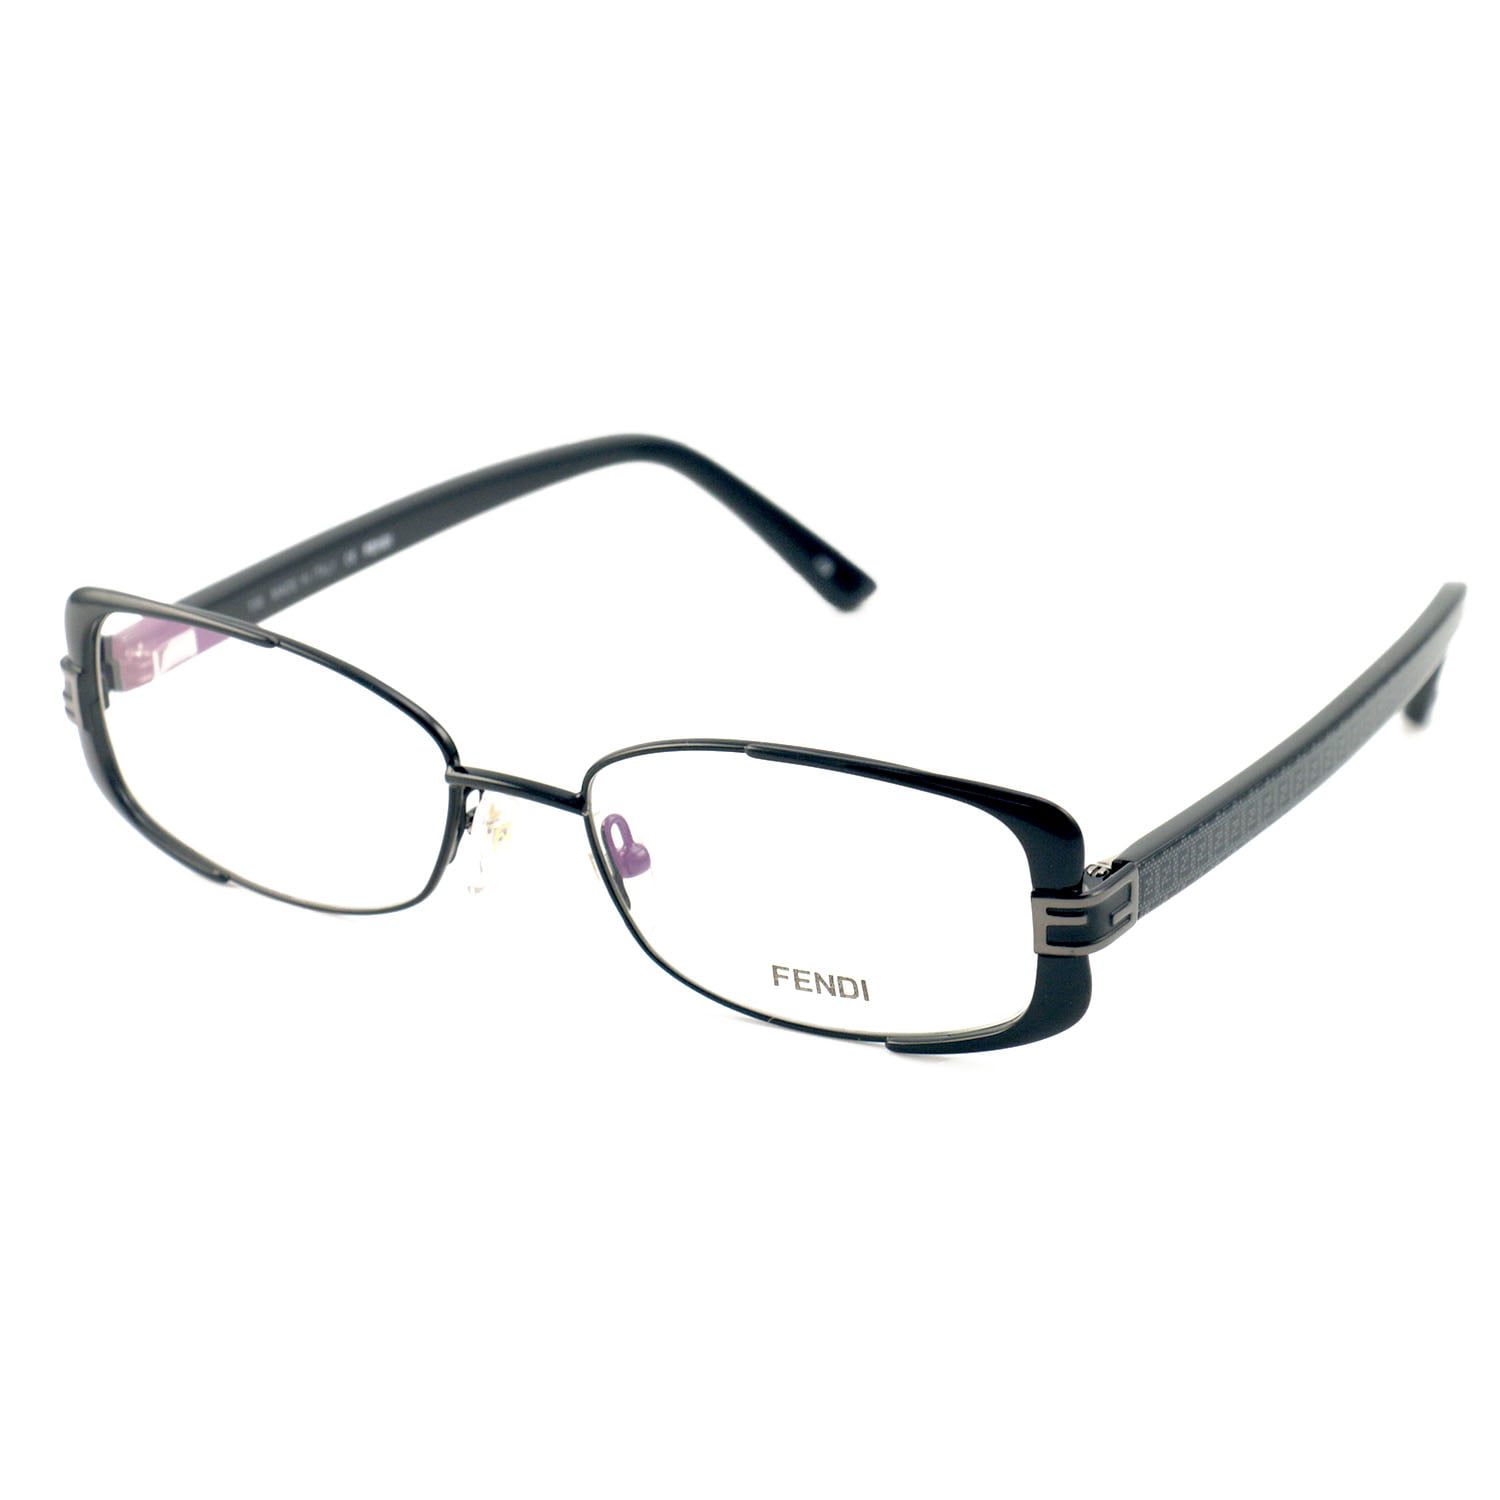 Fendi Eyeglasses Women Black Frames Rectangle 52 17 135 F944 001